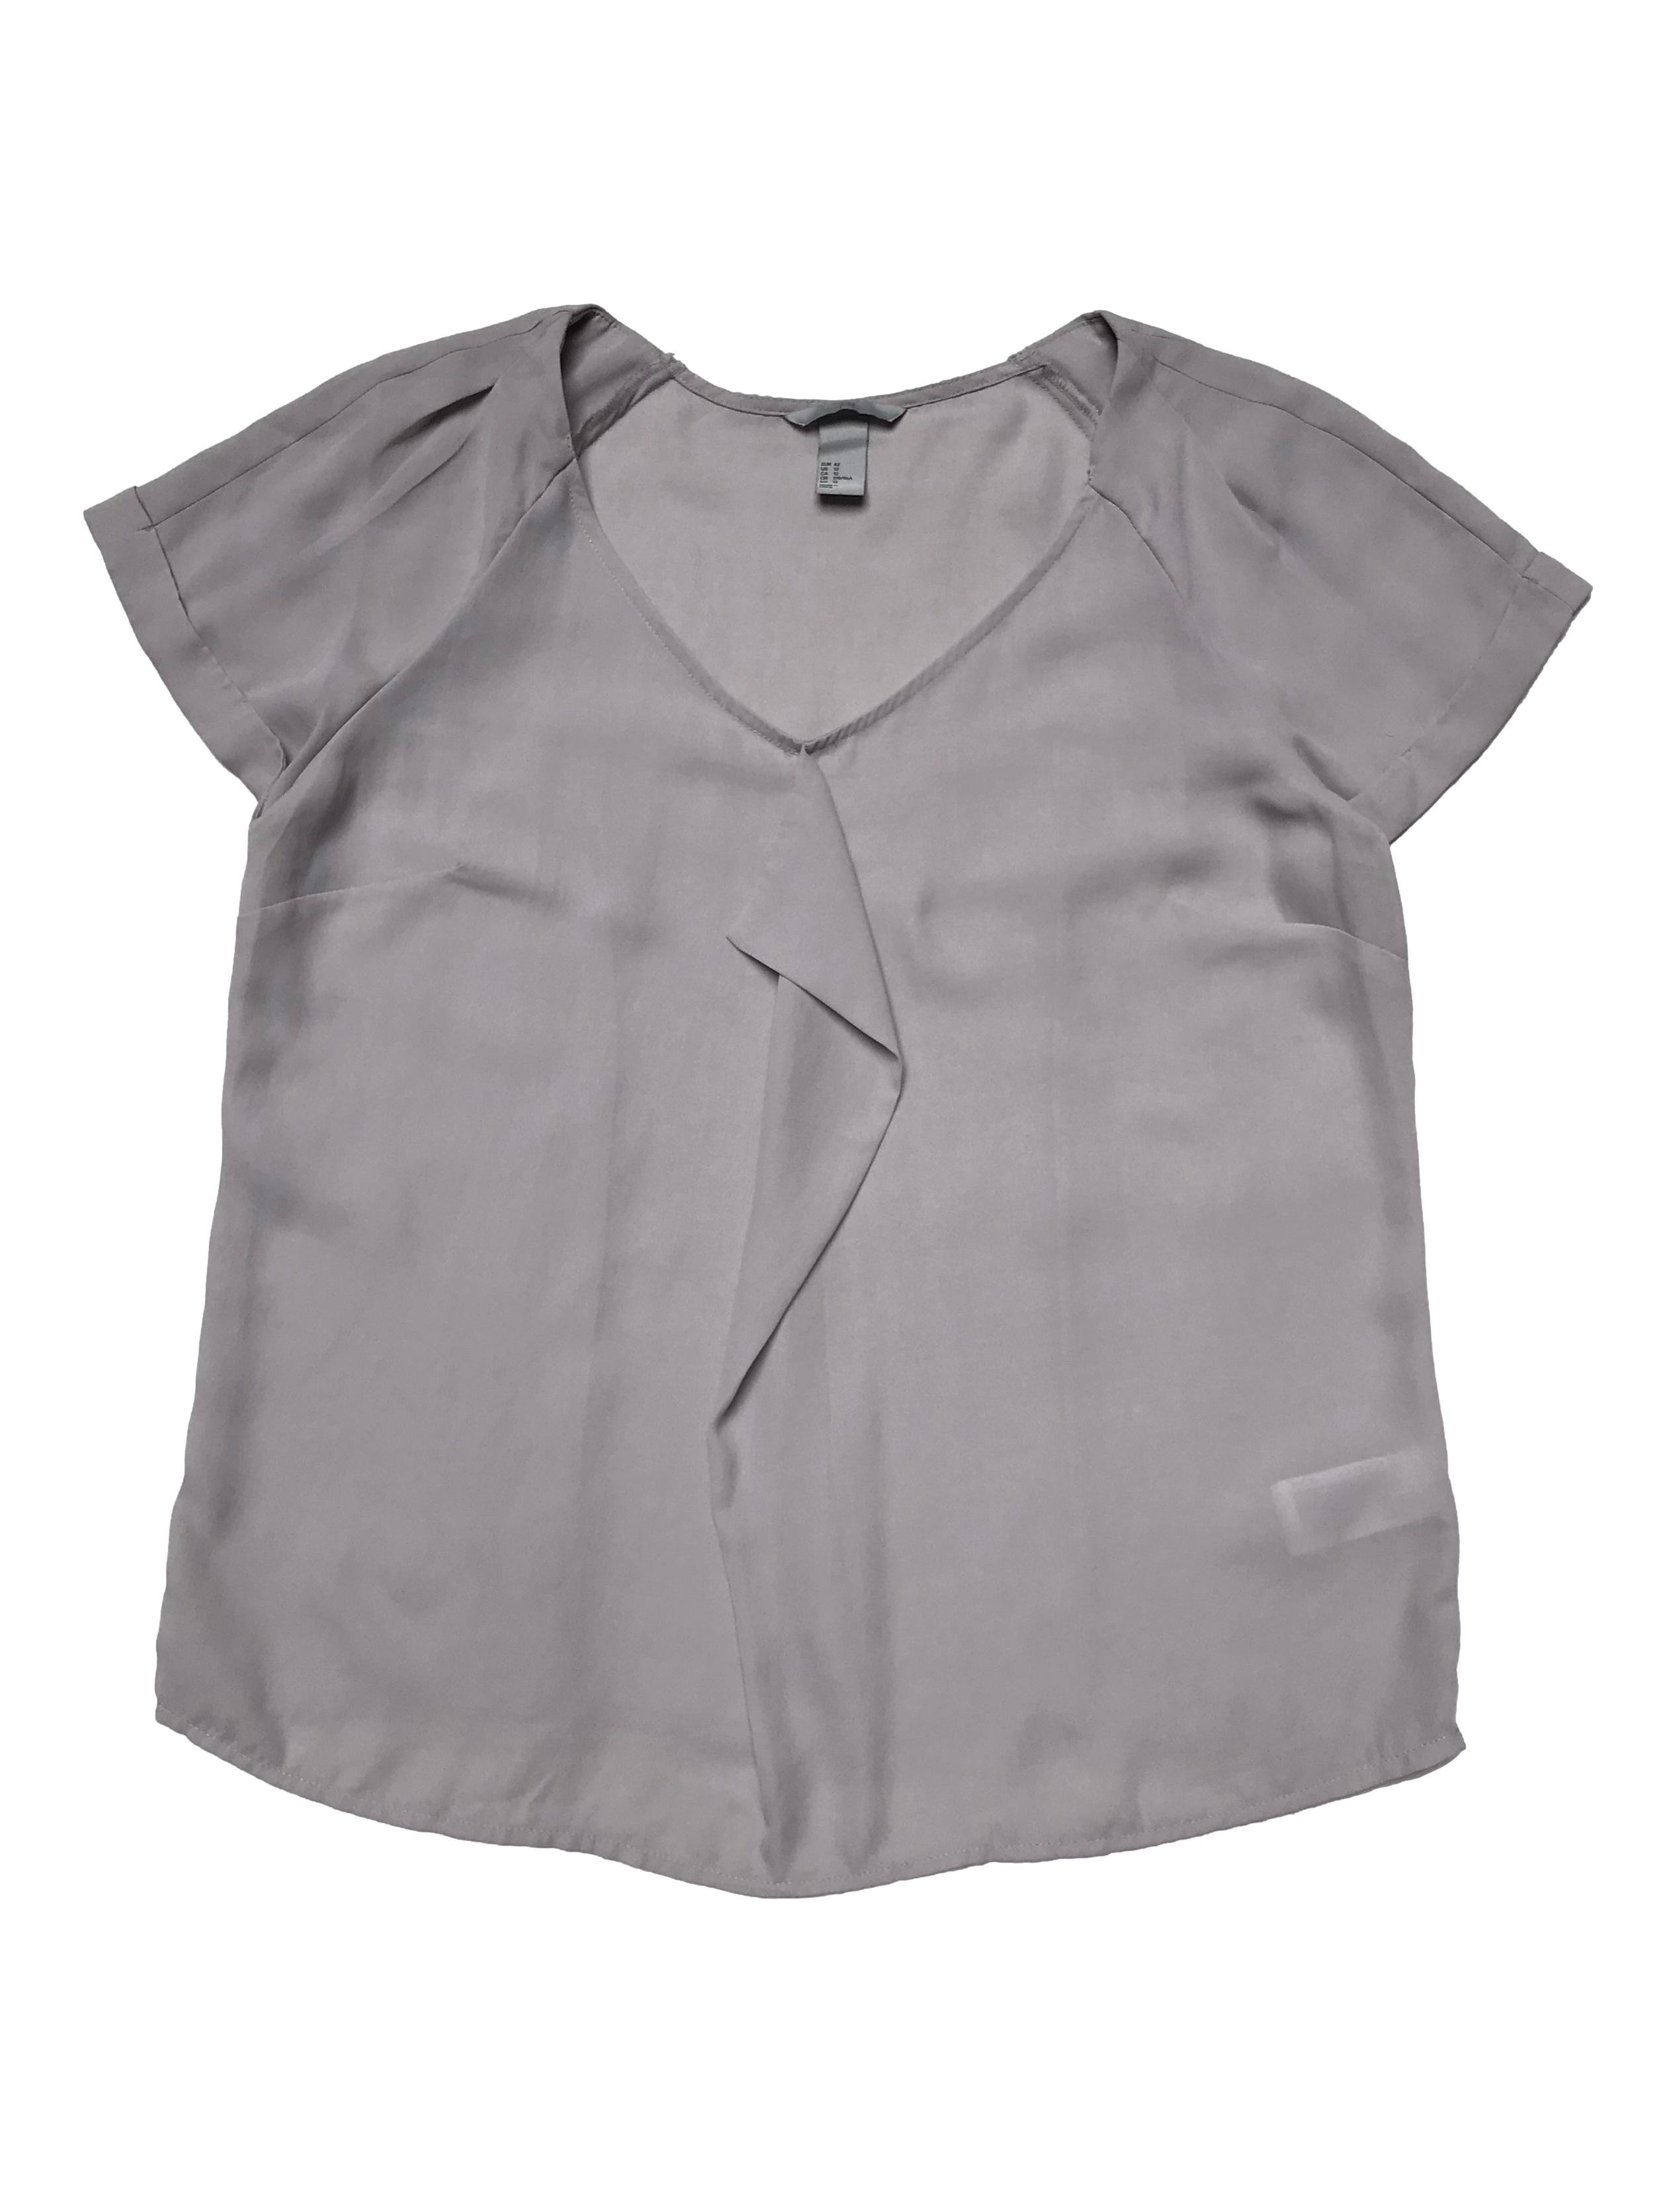 Blusa H&M de gasa con volante al centro, mangas con doble capa de tela, pliegues y dobladillo. Busto 108cm Largo 62cm